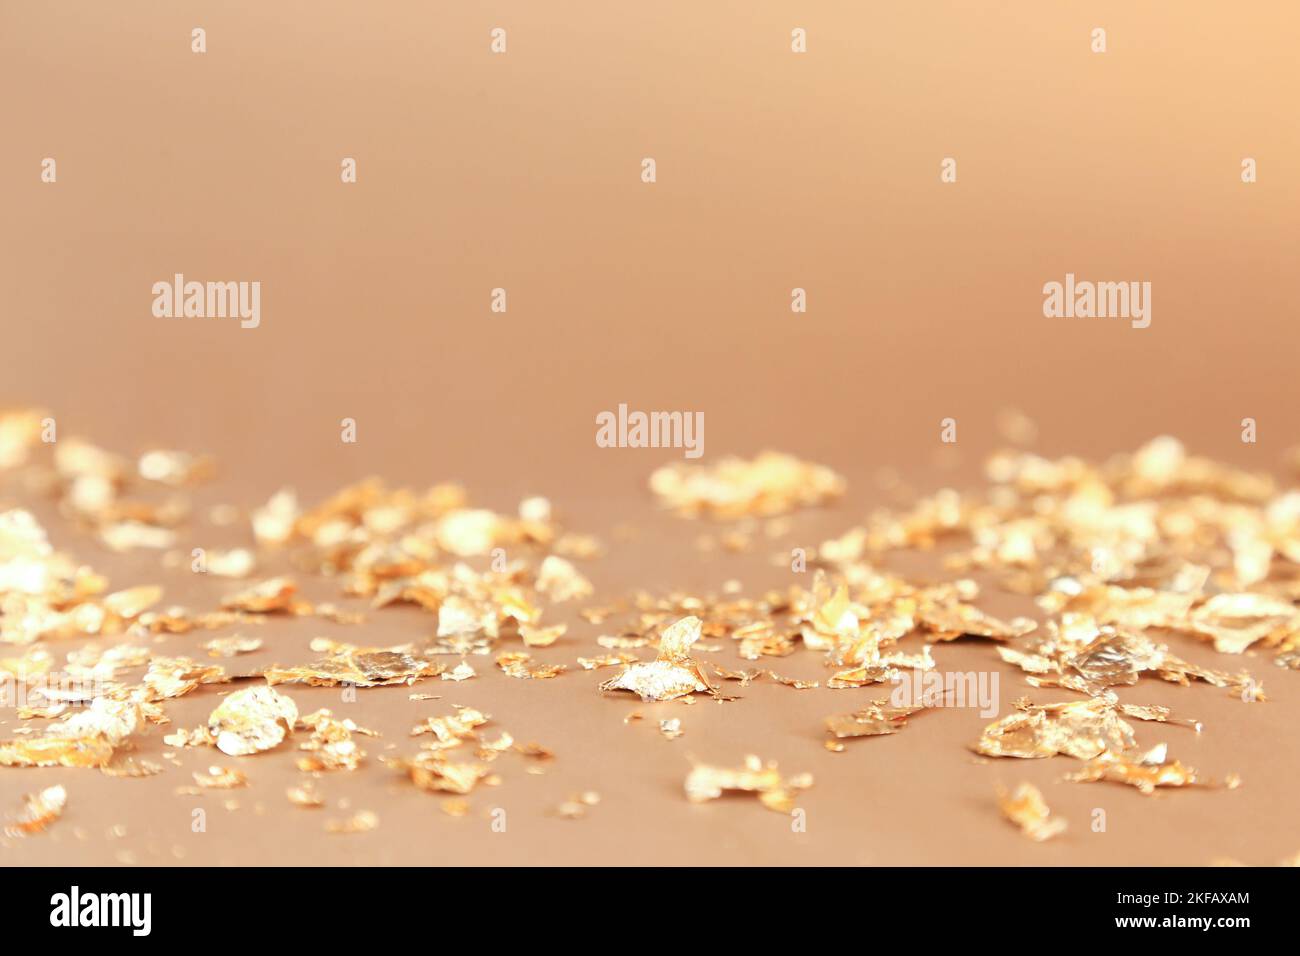 Hintergrund der Werbung für Kosmetikprodukte. Stücke von goldenem Papier-Feuerwerkskörper auf goldenem Hintergrund. Leerer Ort für die Anzeige der Produktverpackung, Neujahr Teil Stockfoto